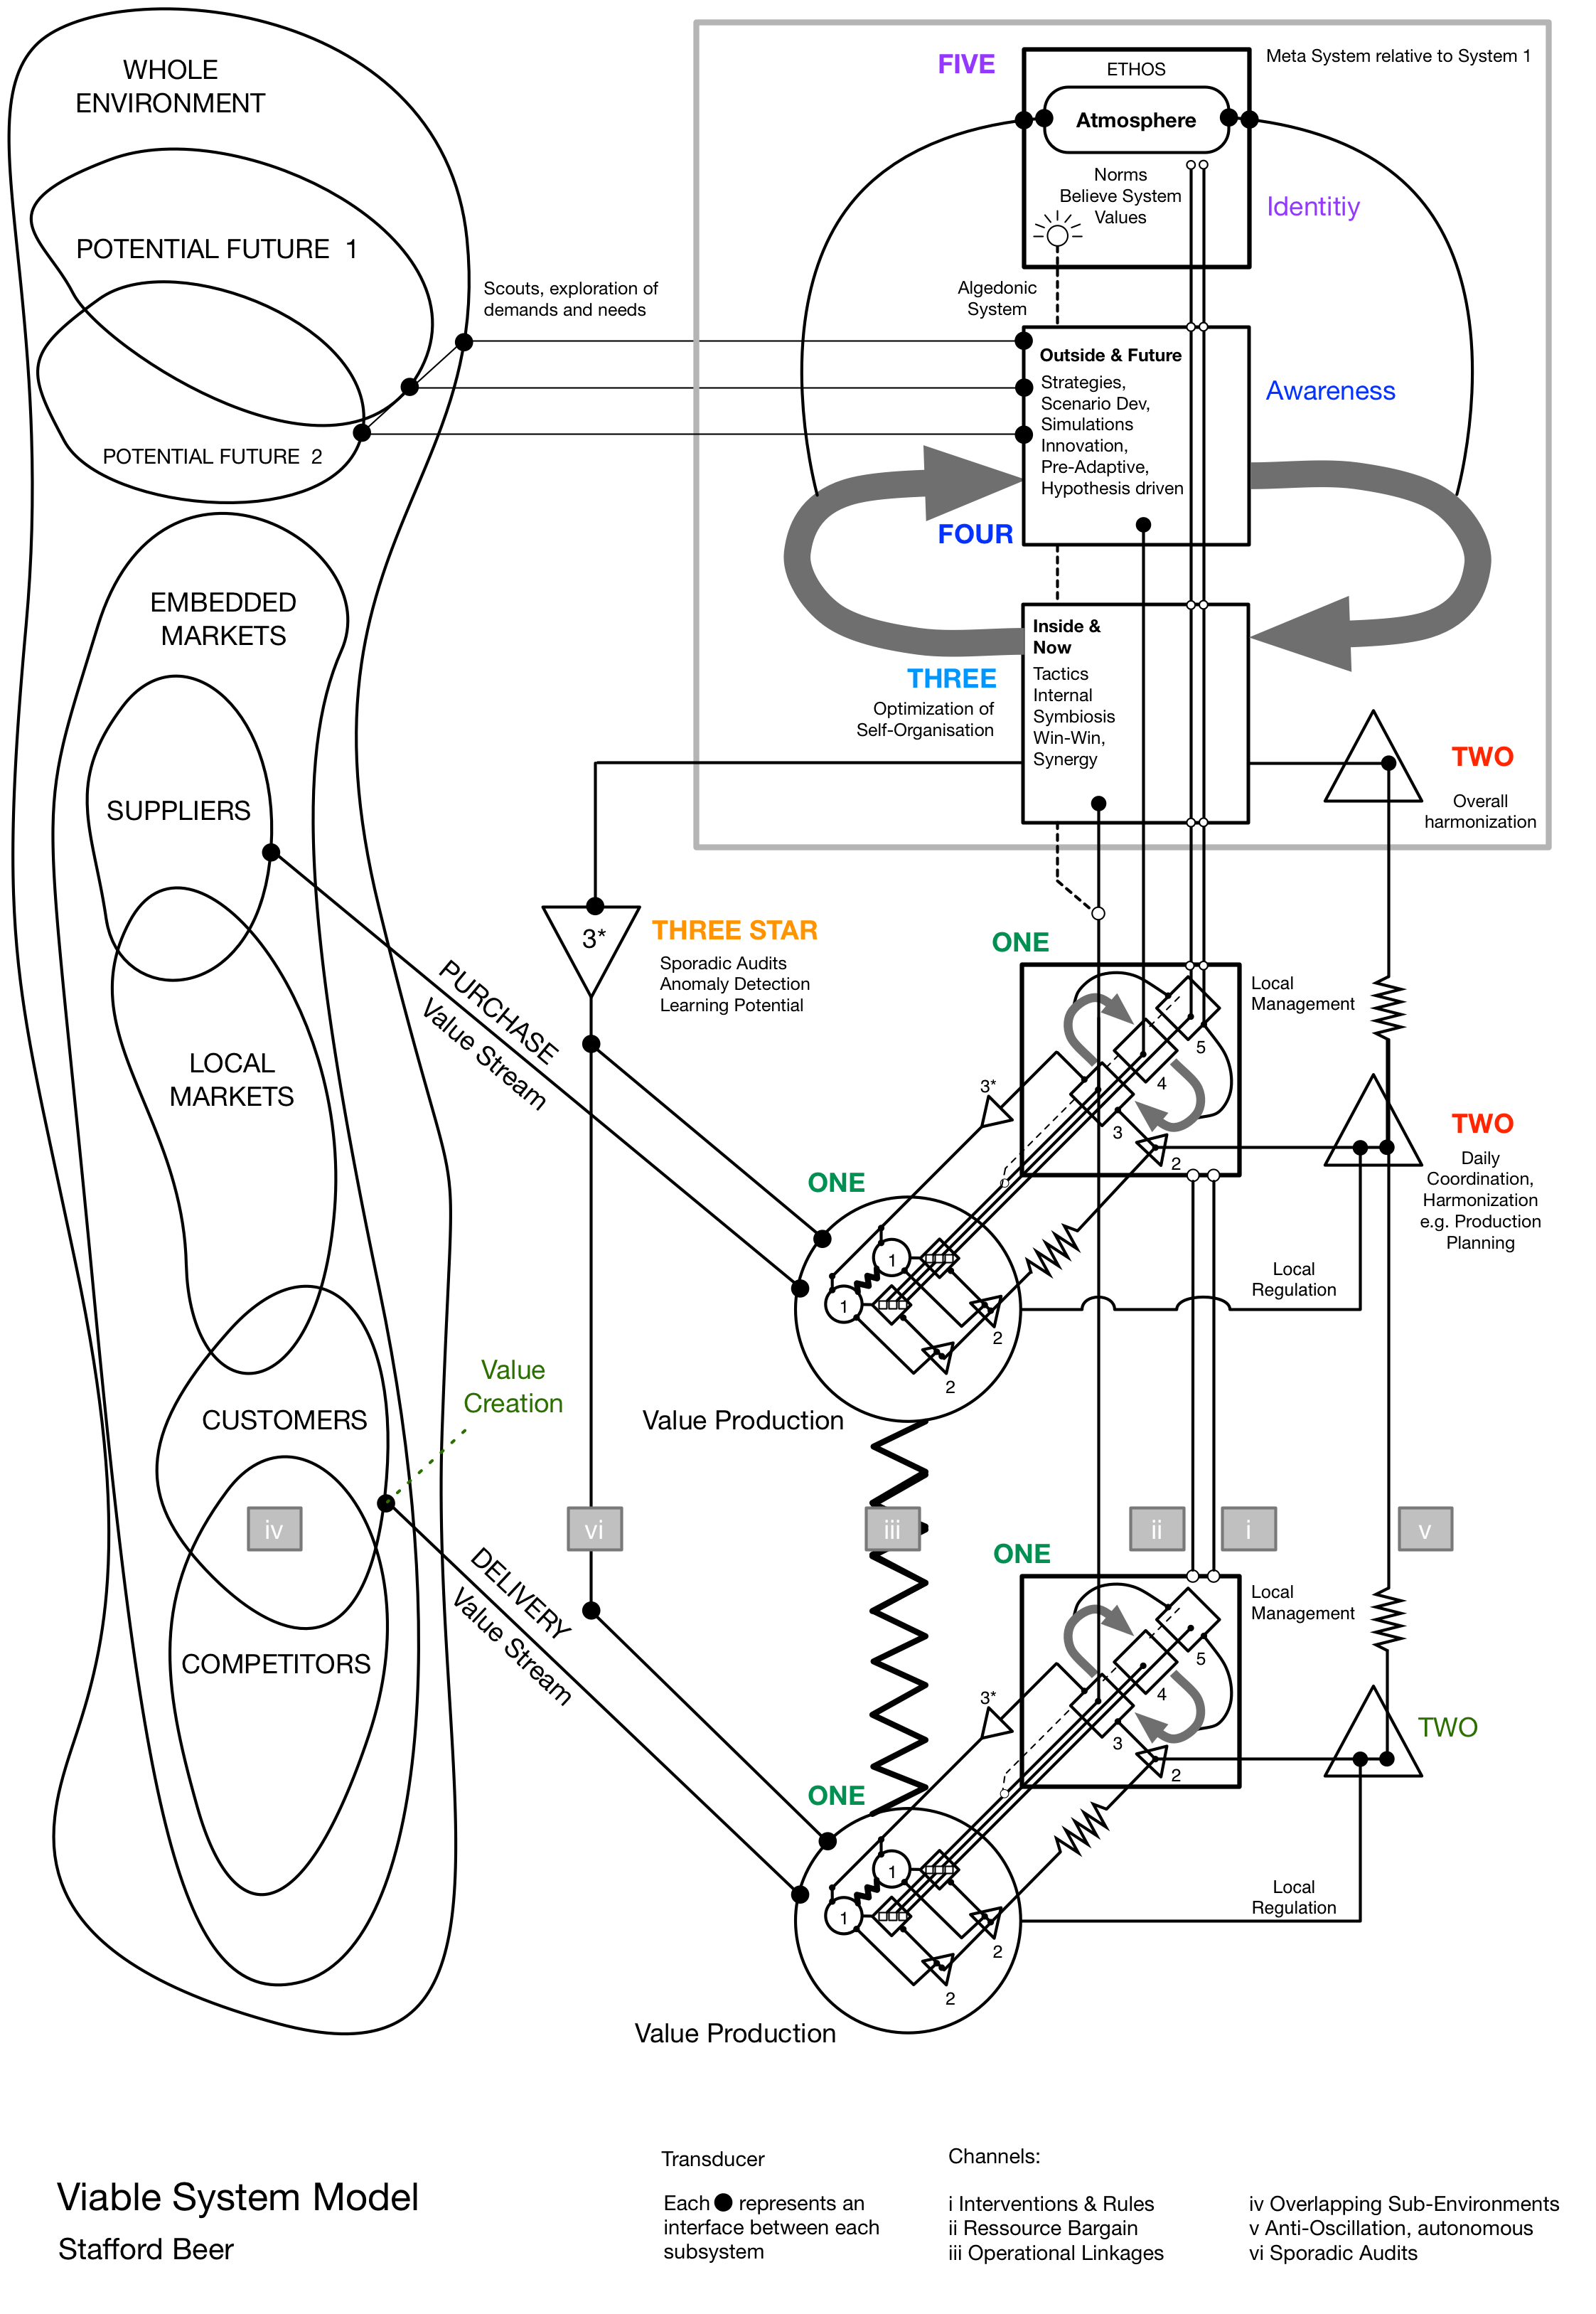 Diseño completo del Modelo de Sistemas Viables